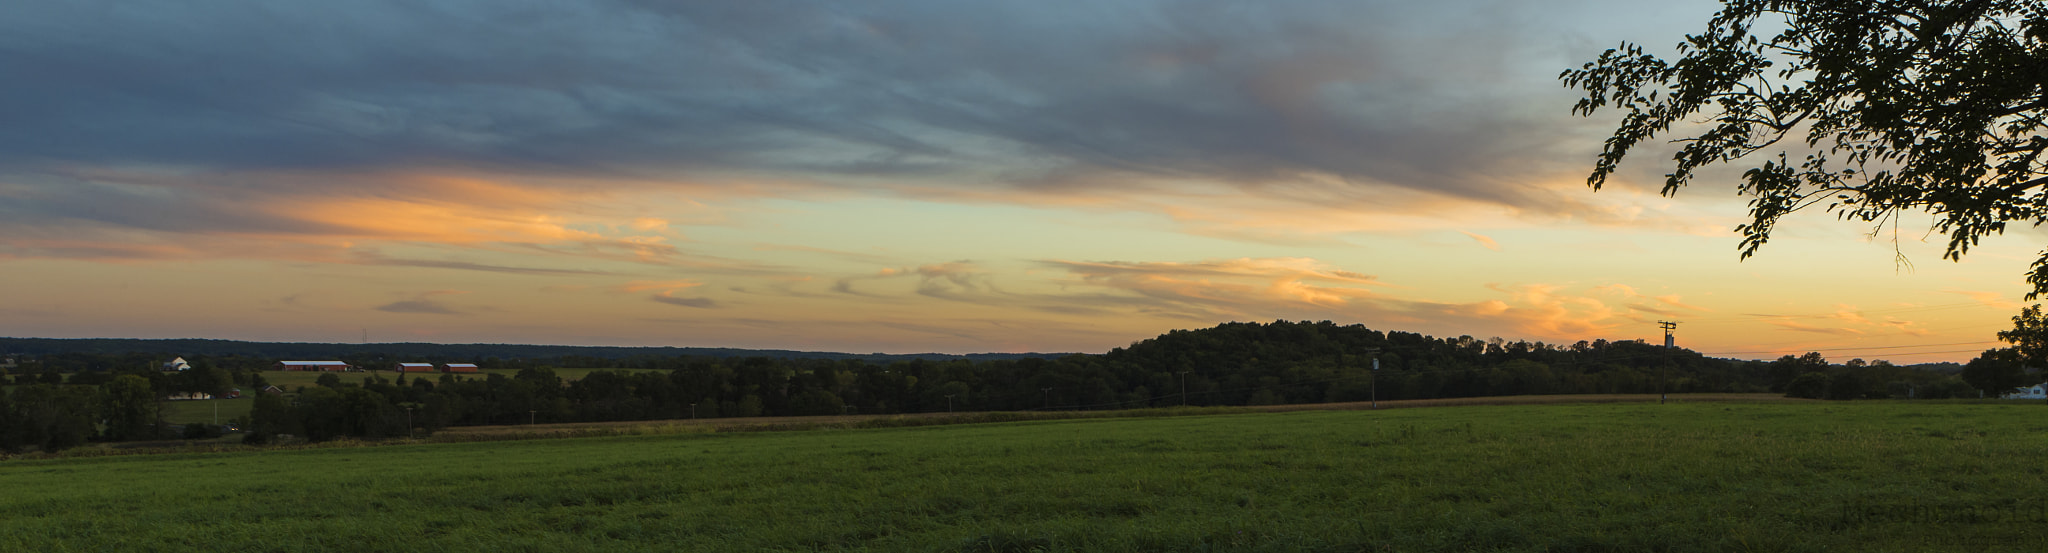 Canon EOS-1D C sample photo. Farmland sunset photography